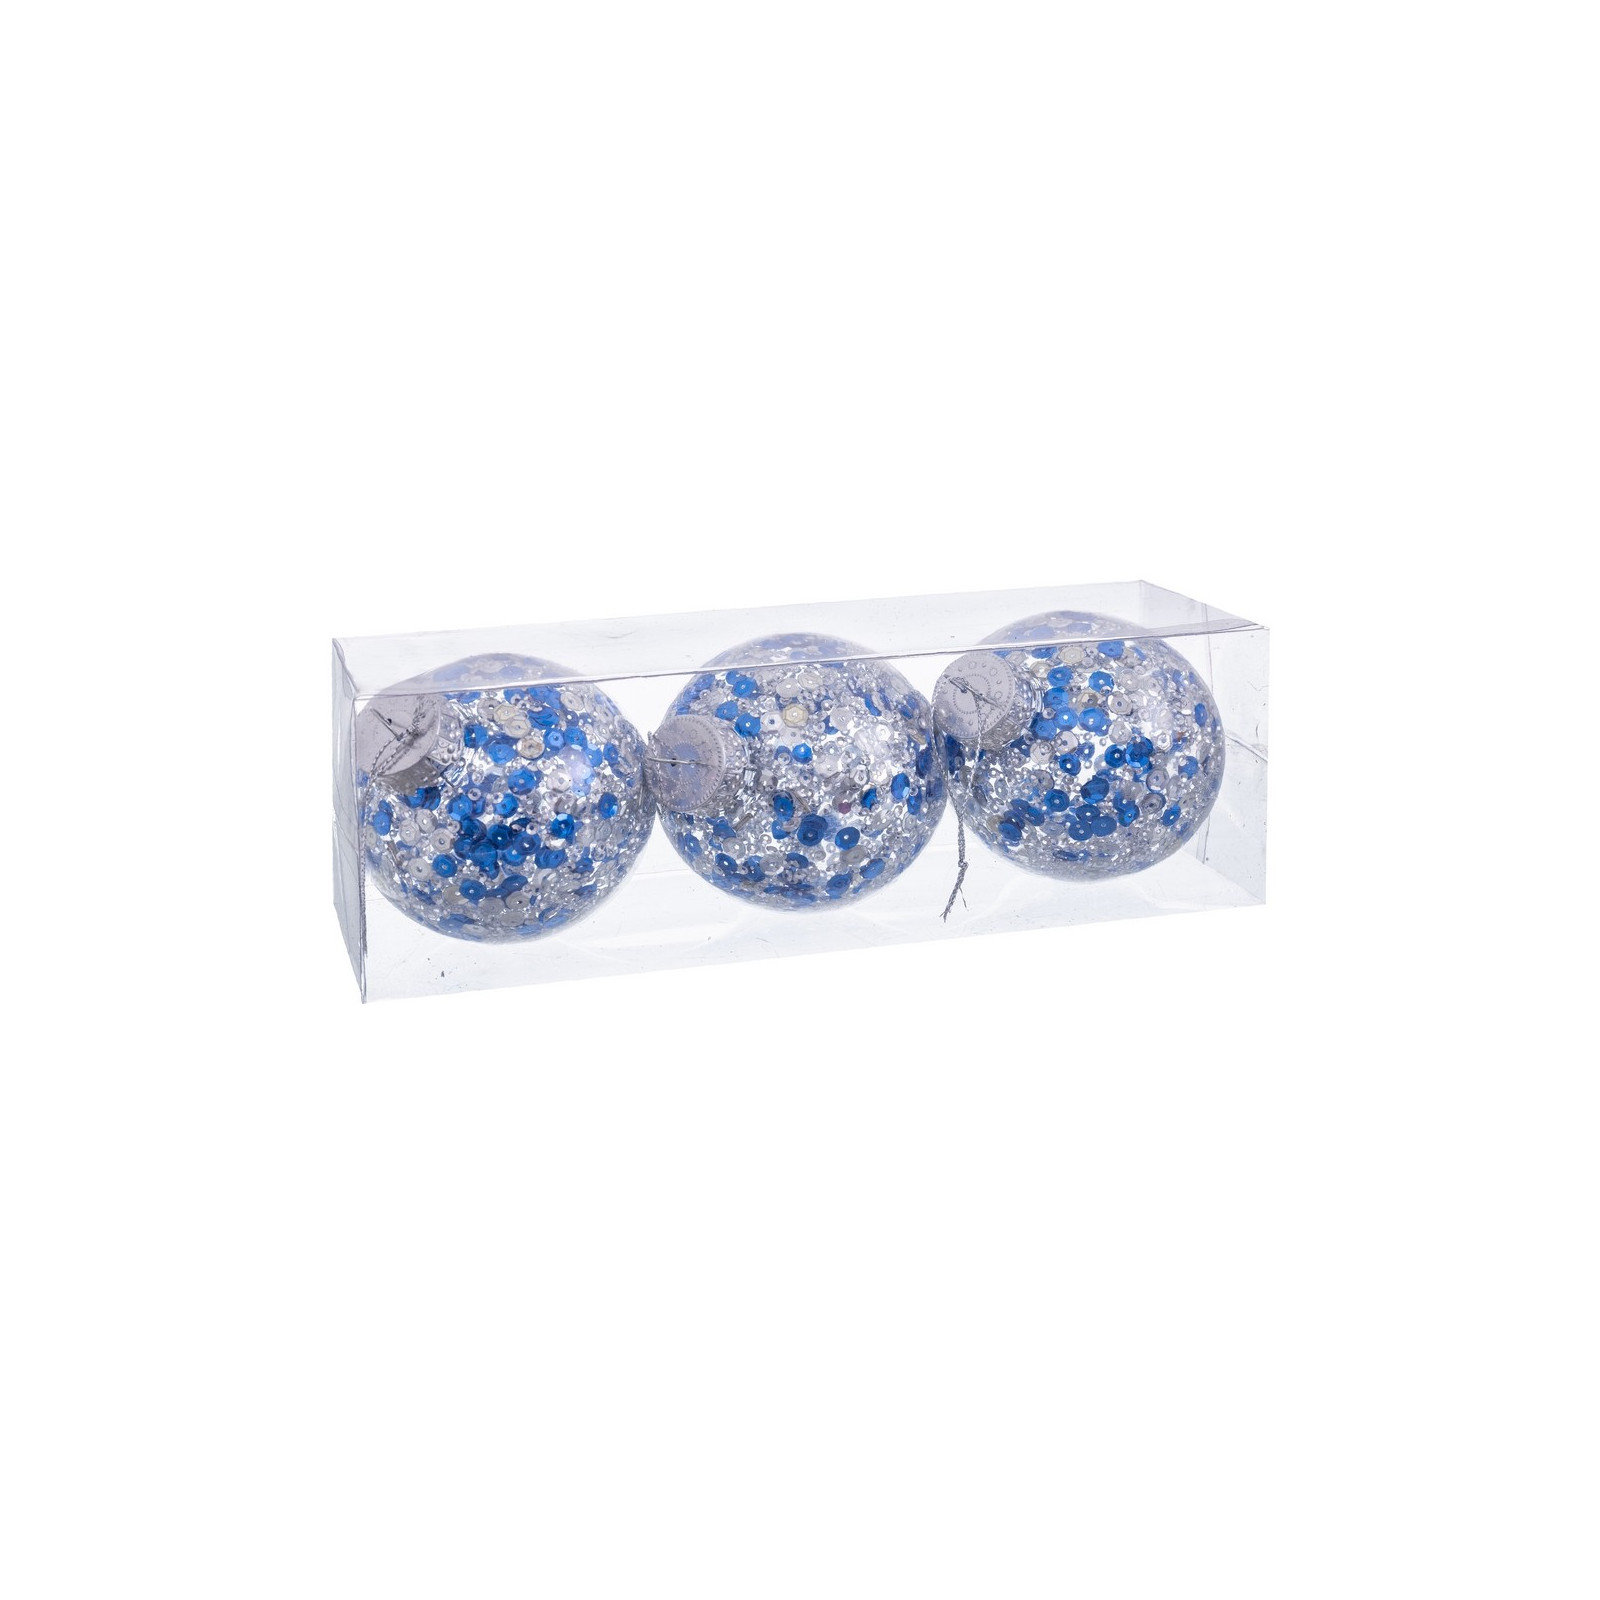 S 3 bolas transparente plata azul 8 x 8 x 8 cm